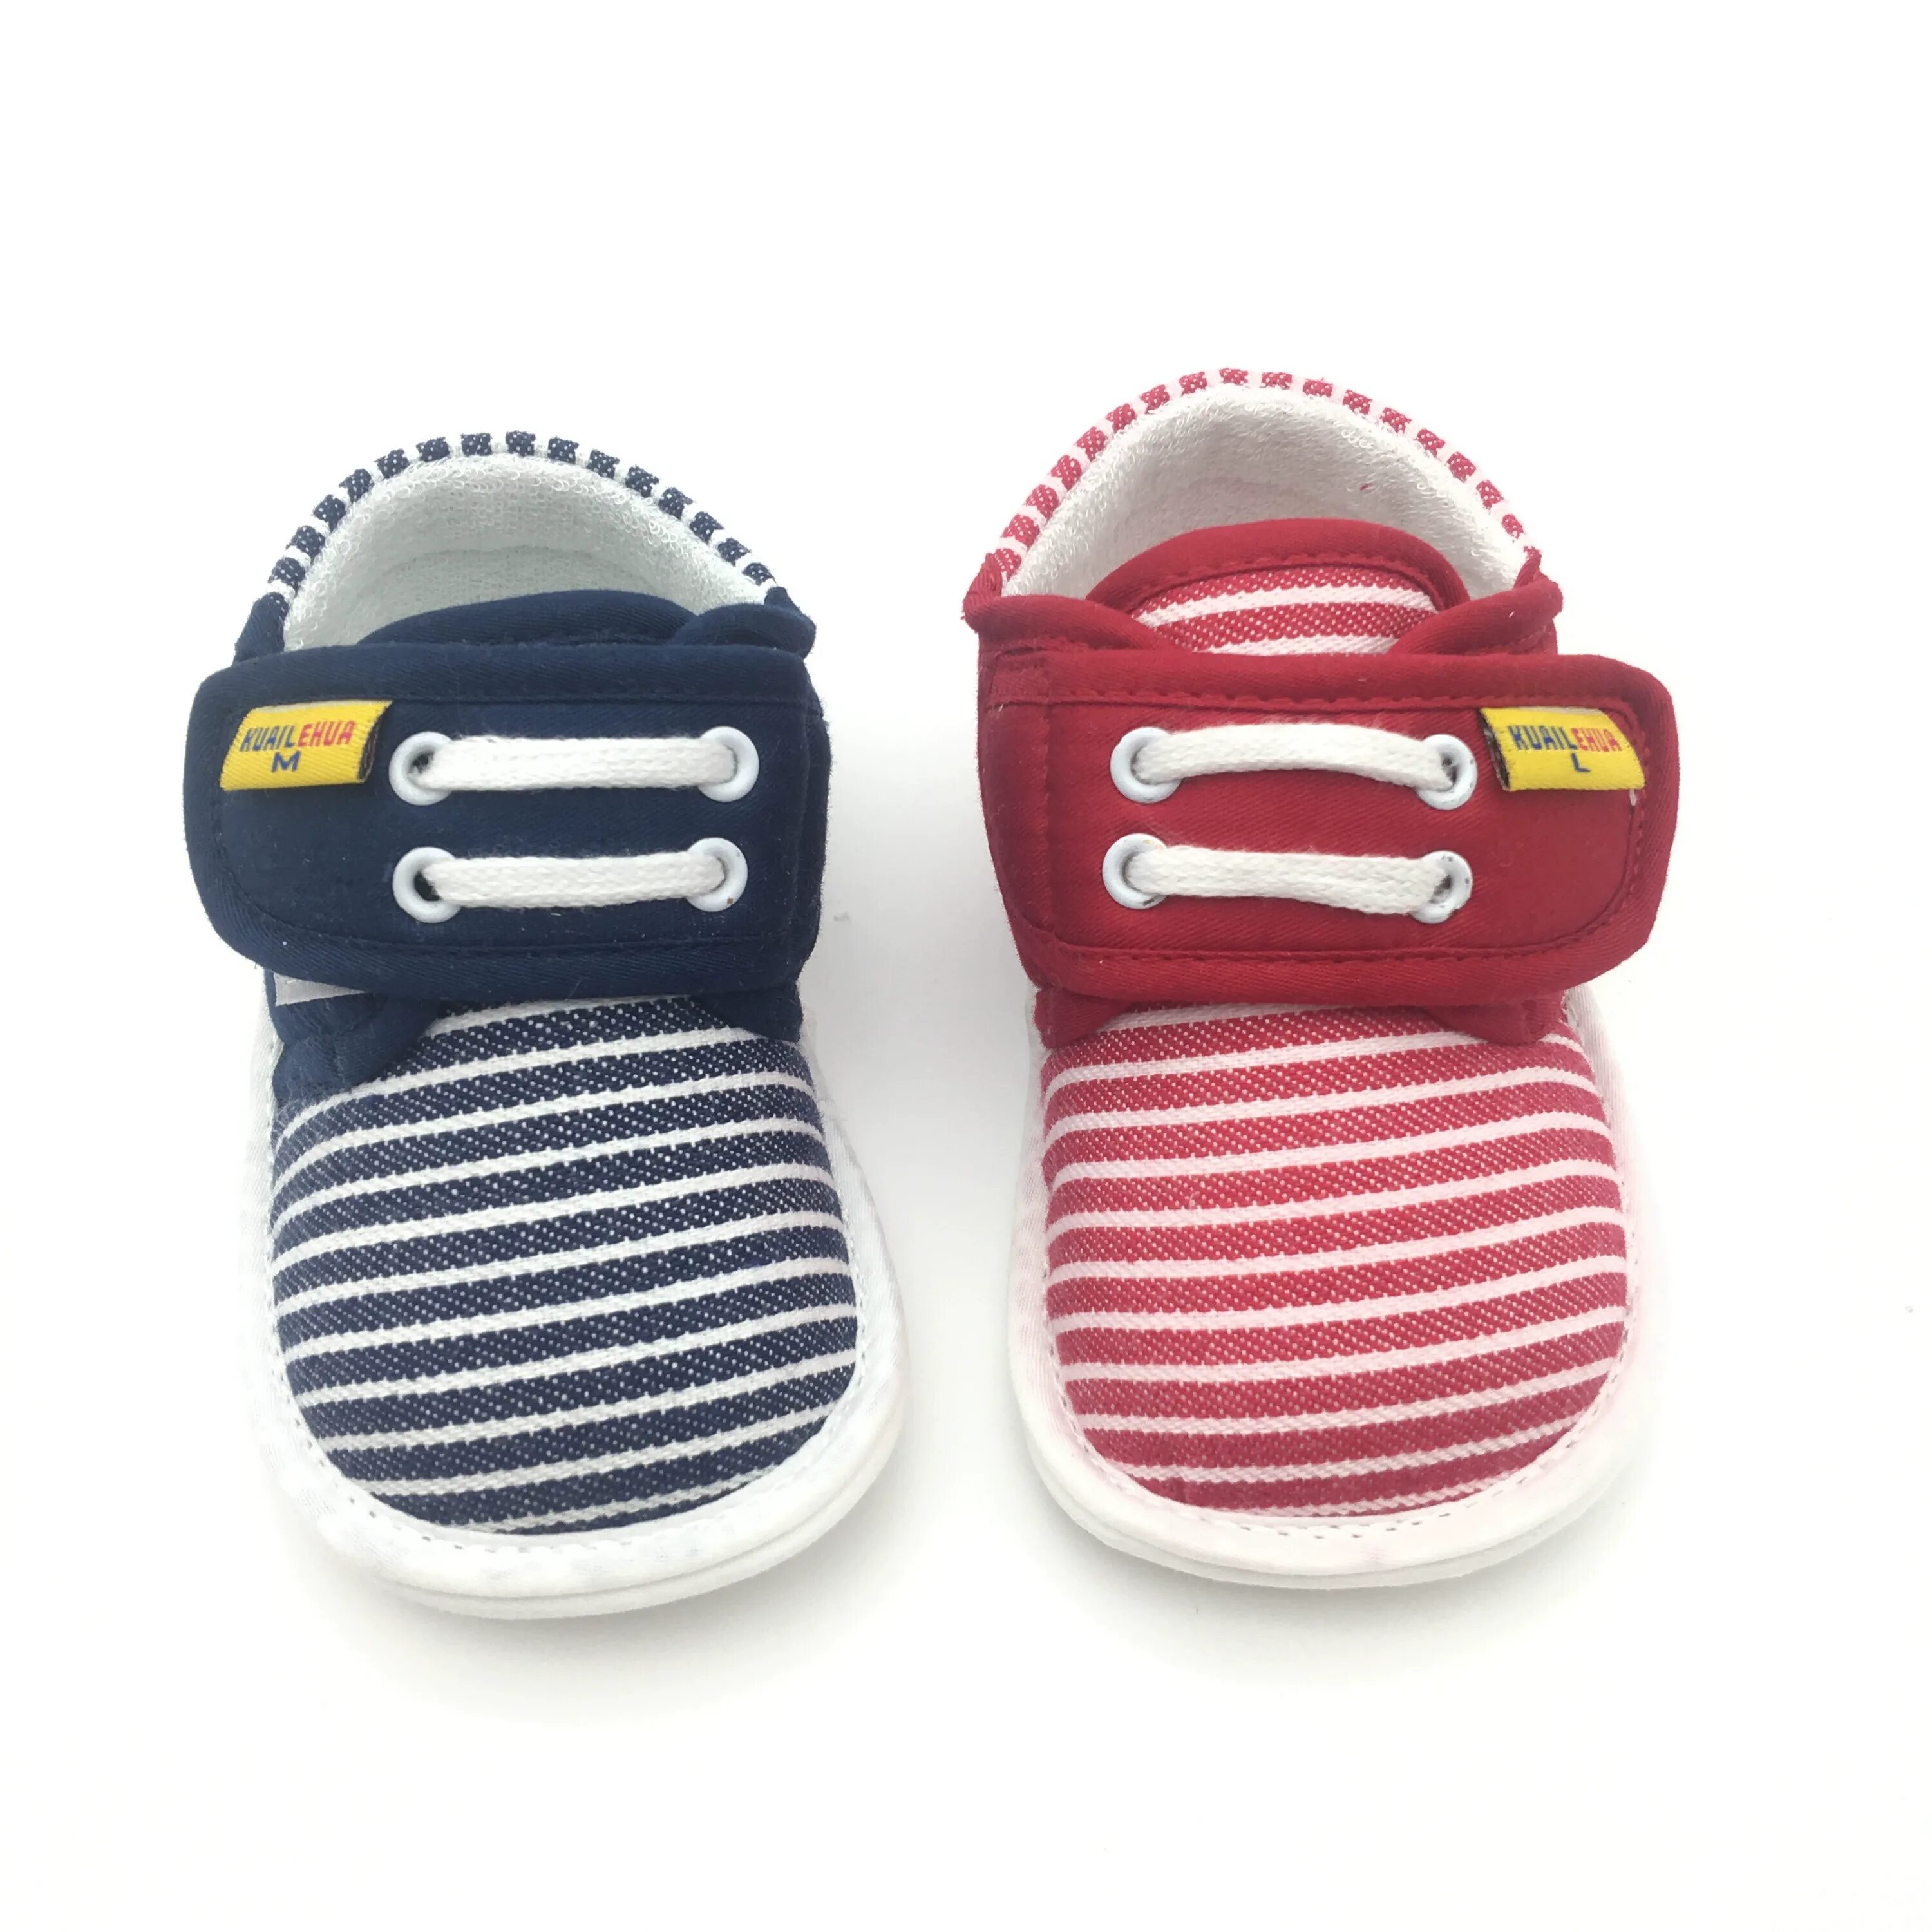 Cesaro Rosso детская обувь. Слипы обувь детские. Модная детская обувь для малышей. Детская обувь на весну для новорожденных тапки.